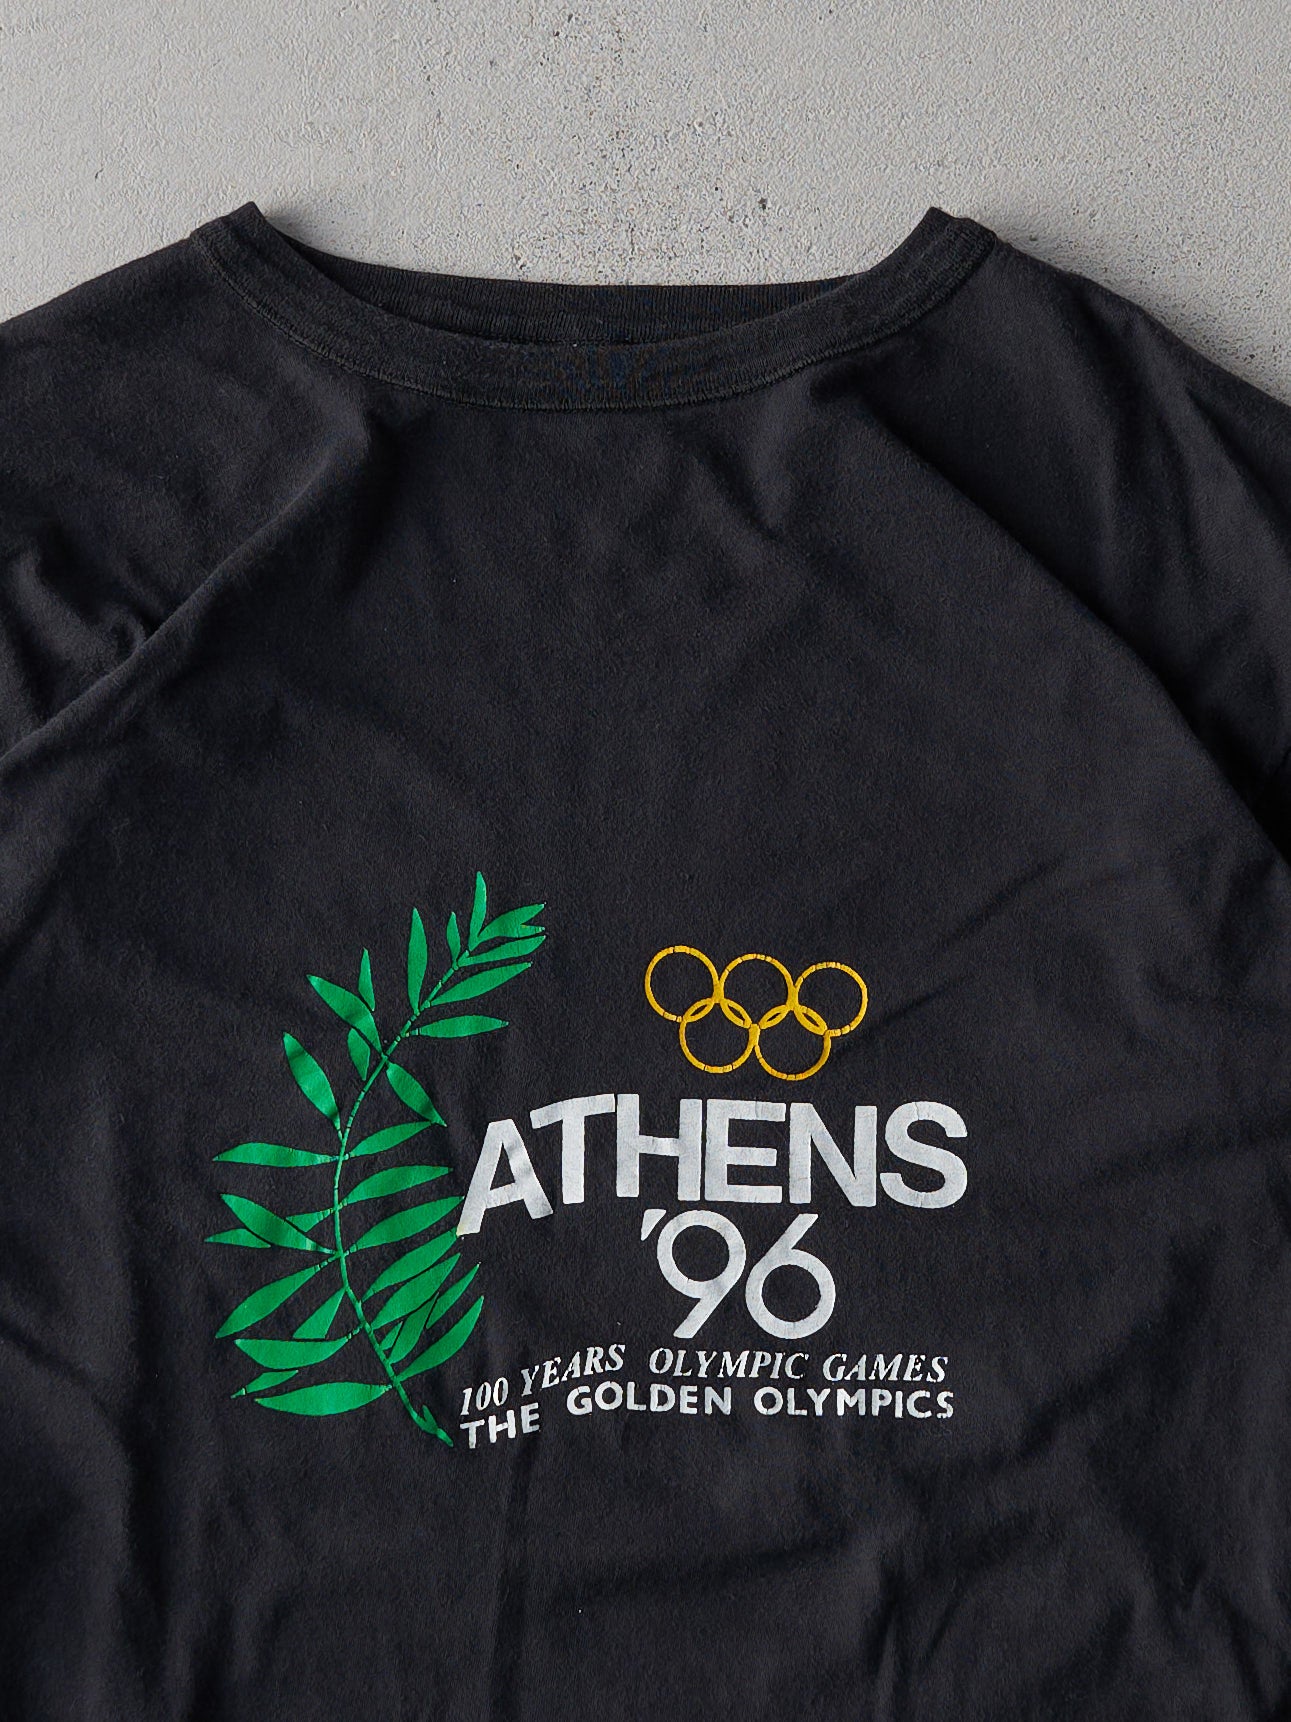 Vintage 96' Black Greek Olympics Ringer Tee (M)